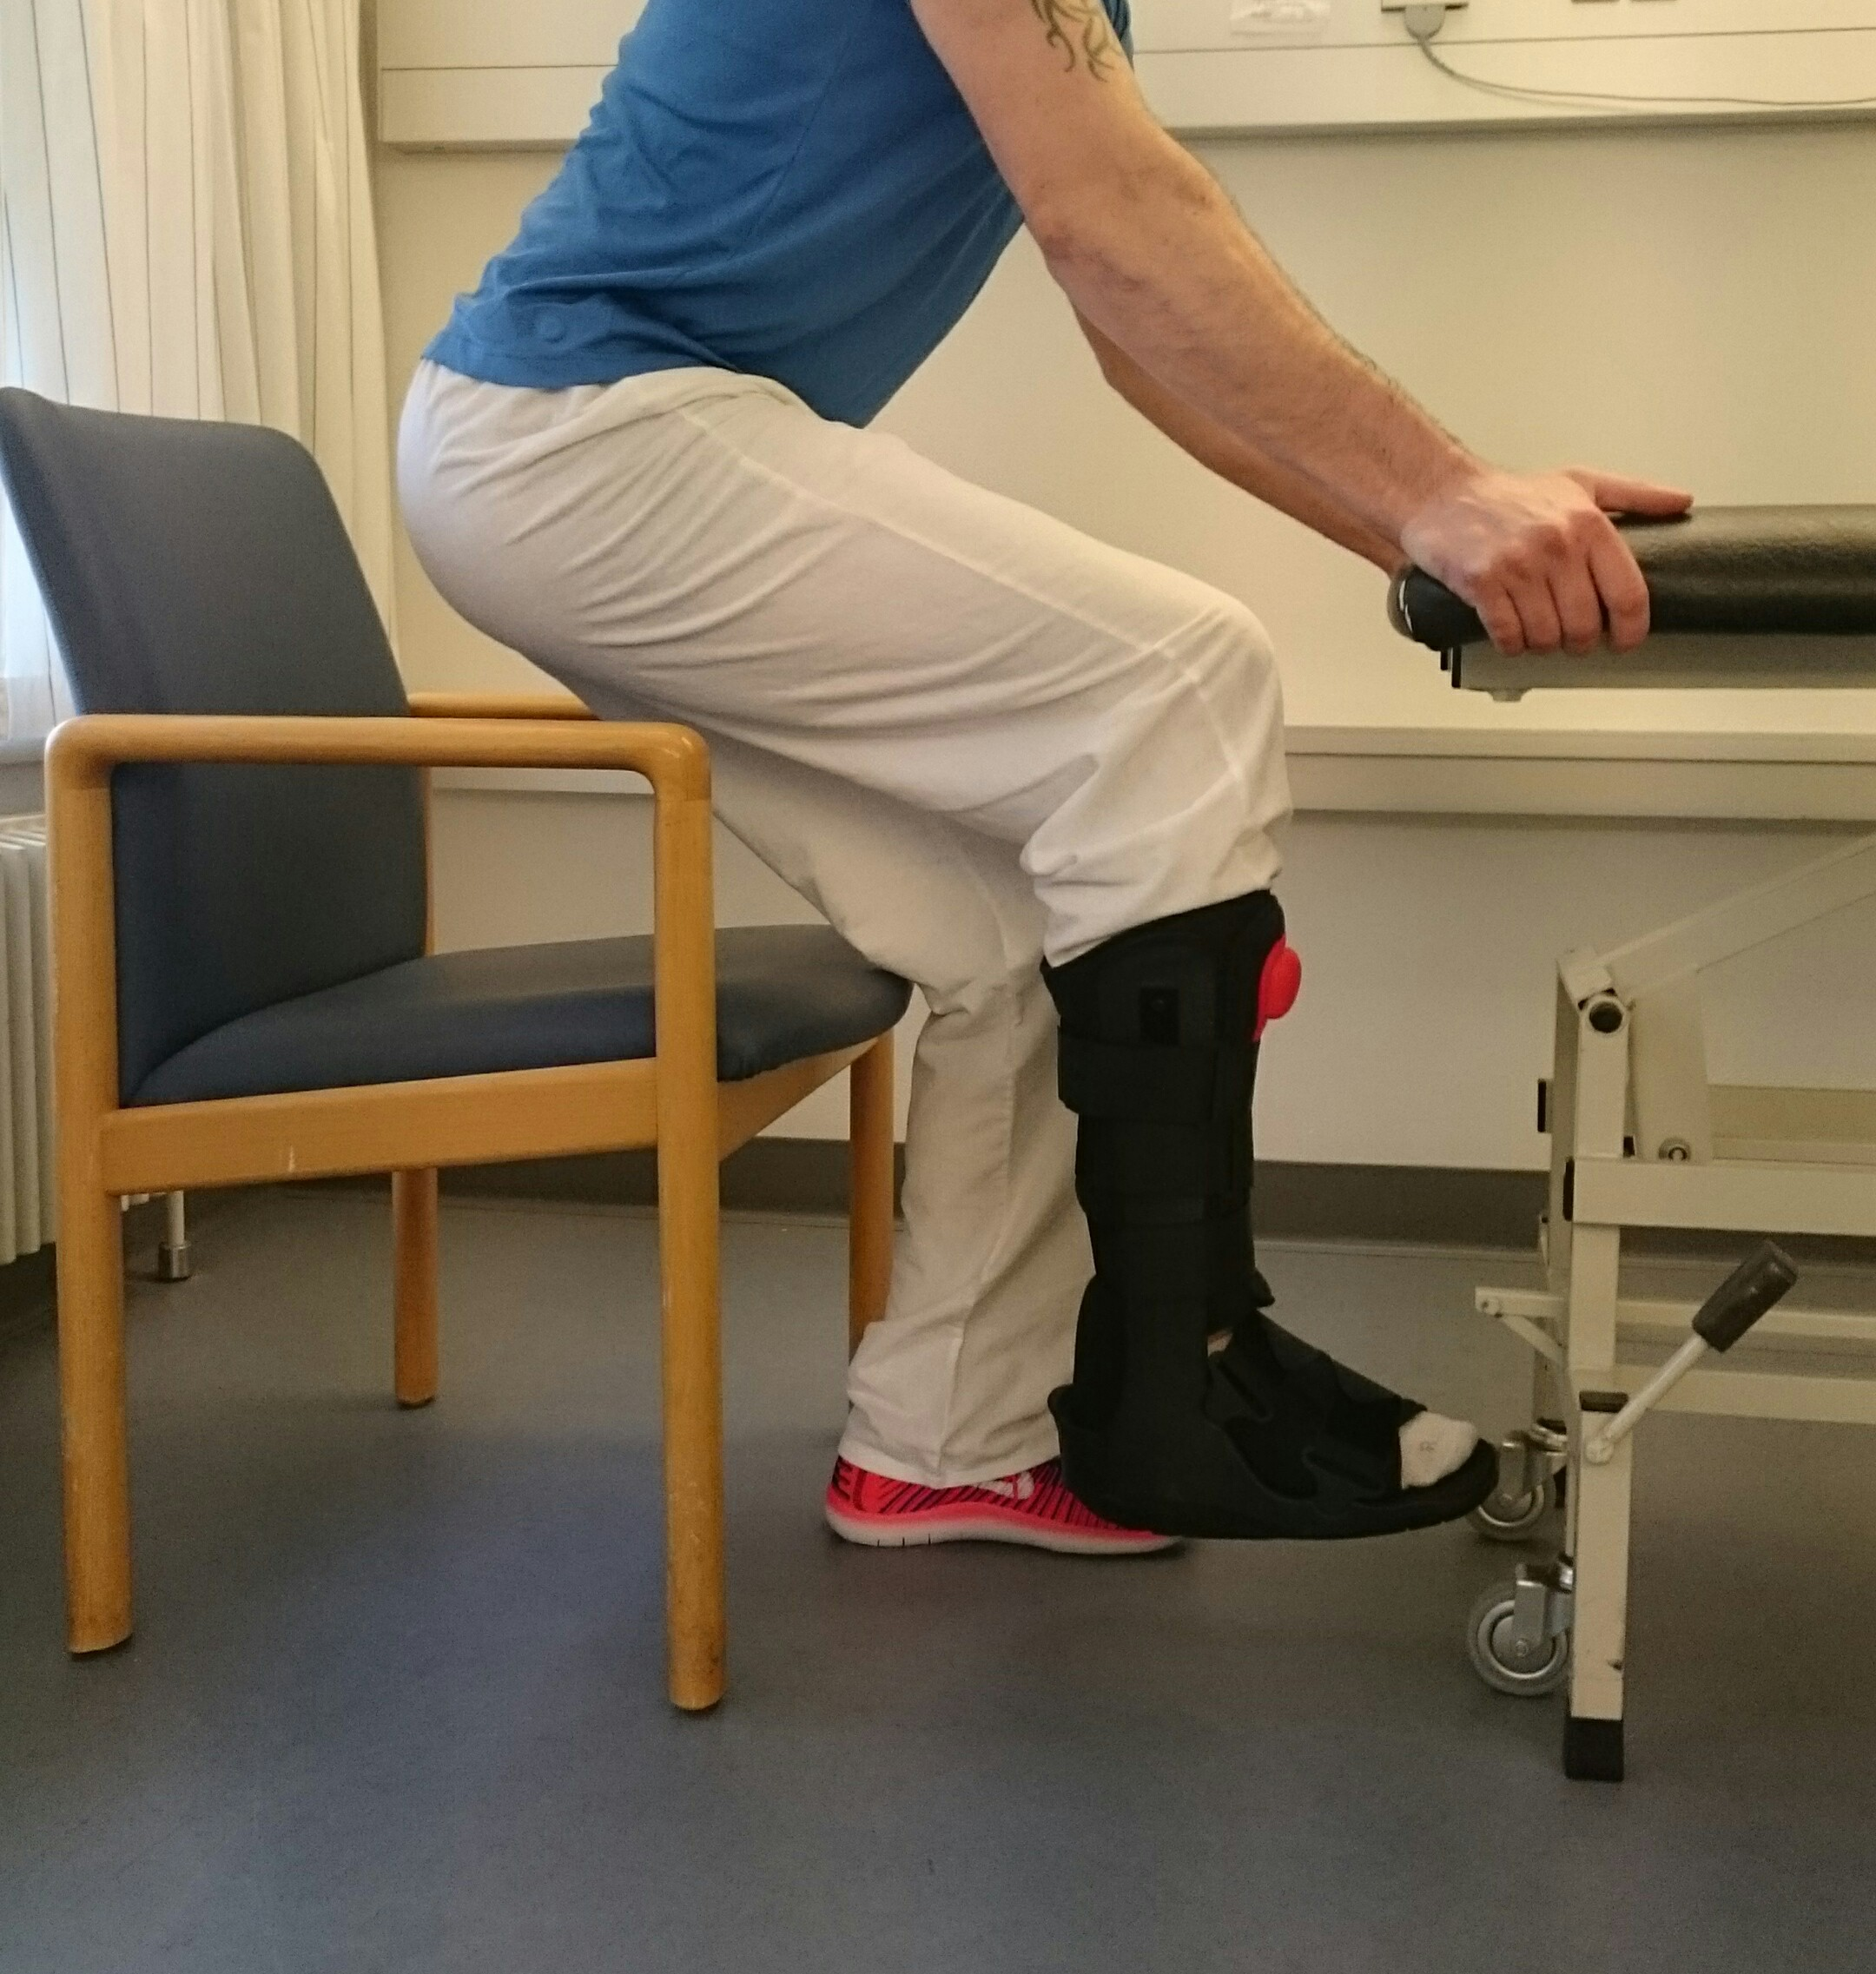 Person står på et ben ved bord og foran en stol. Personen bøjer knæet på standbenet